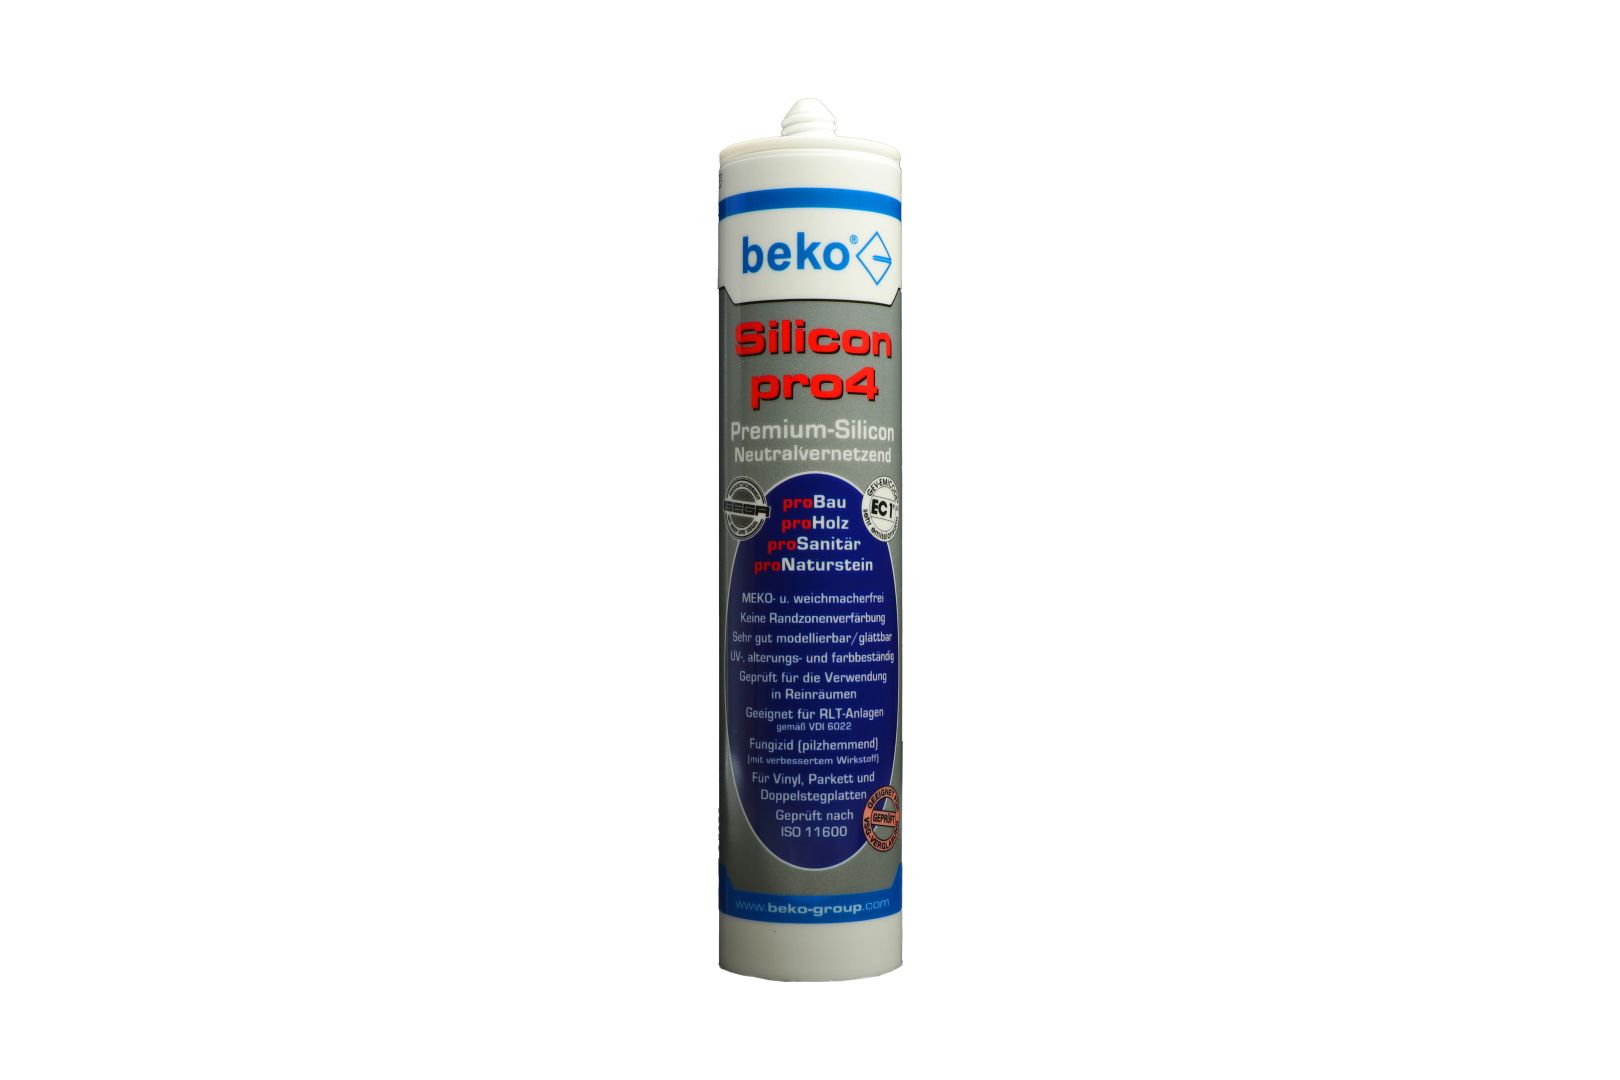 beko Silicon pro4, Premium-Silicon, Silikon-Dichtstoff, neutralvernetzend, mittelbraun/buche-/eiche-dunkel, 310 ml